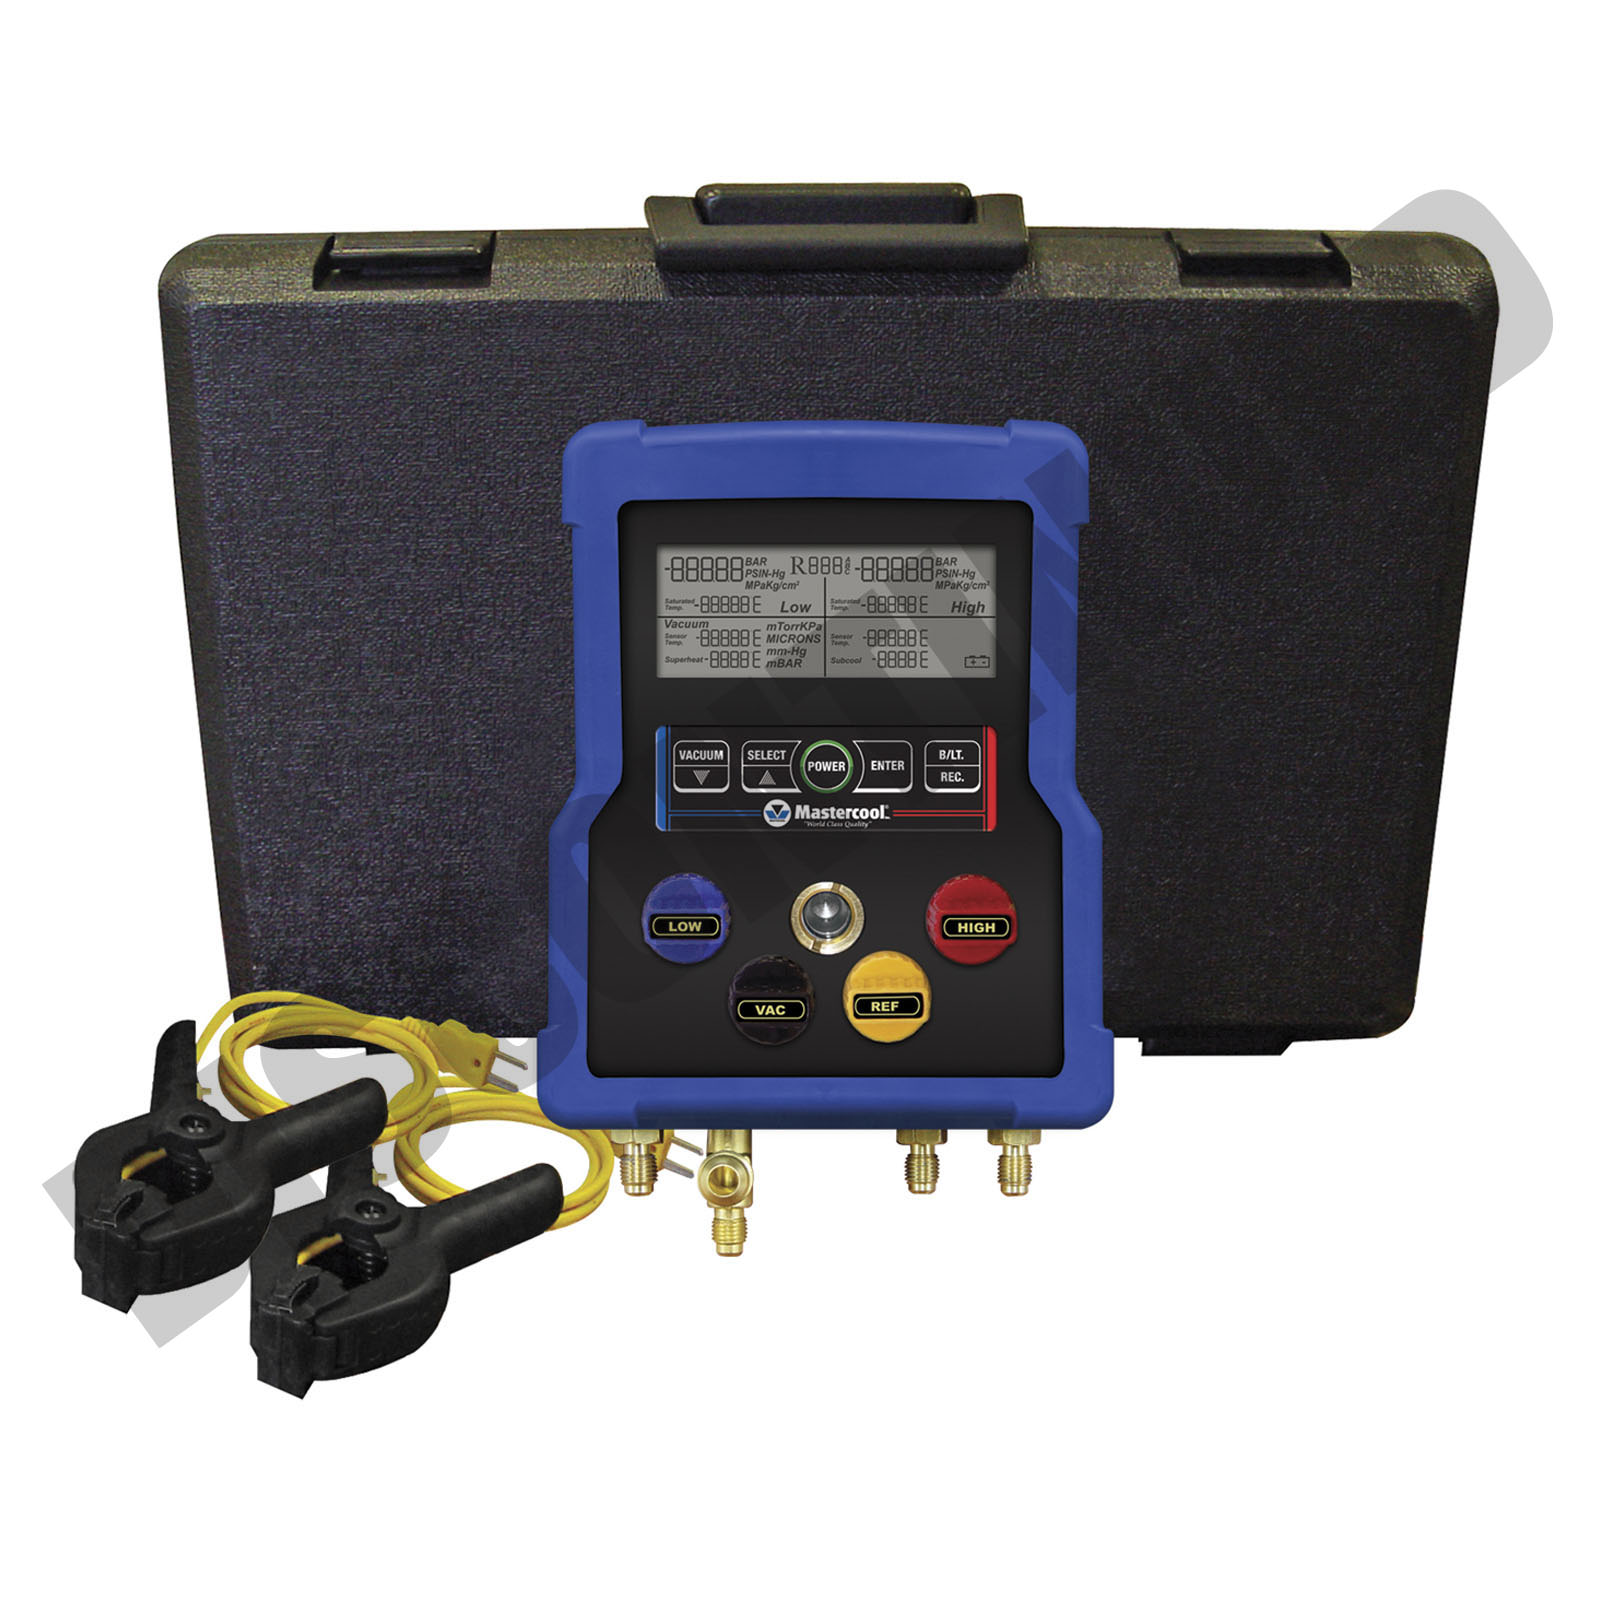 Manomètre digital pression E2 - Fonction enregistreur - Instrumentys